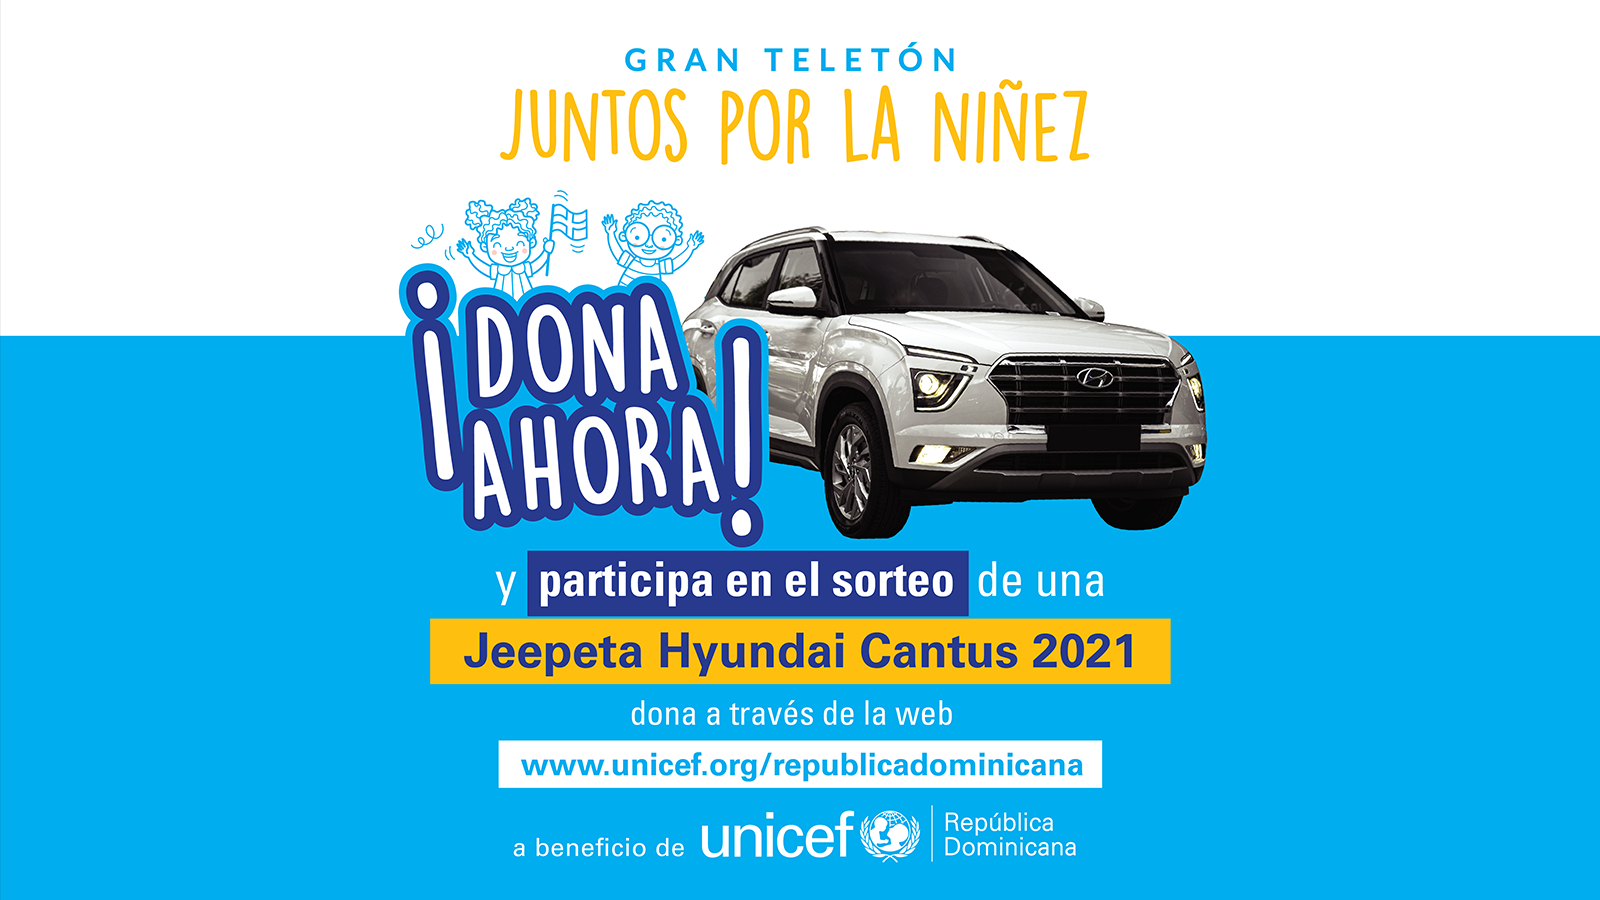 “Juntos por la Niñez”, el teletón de UNICEF en la República Dominicana